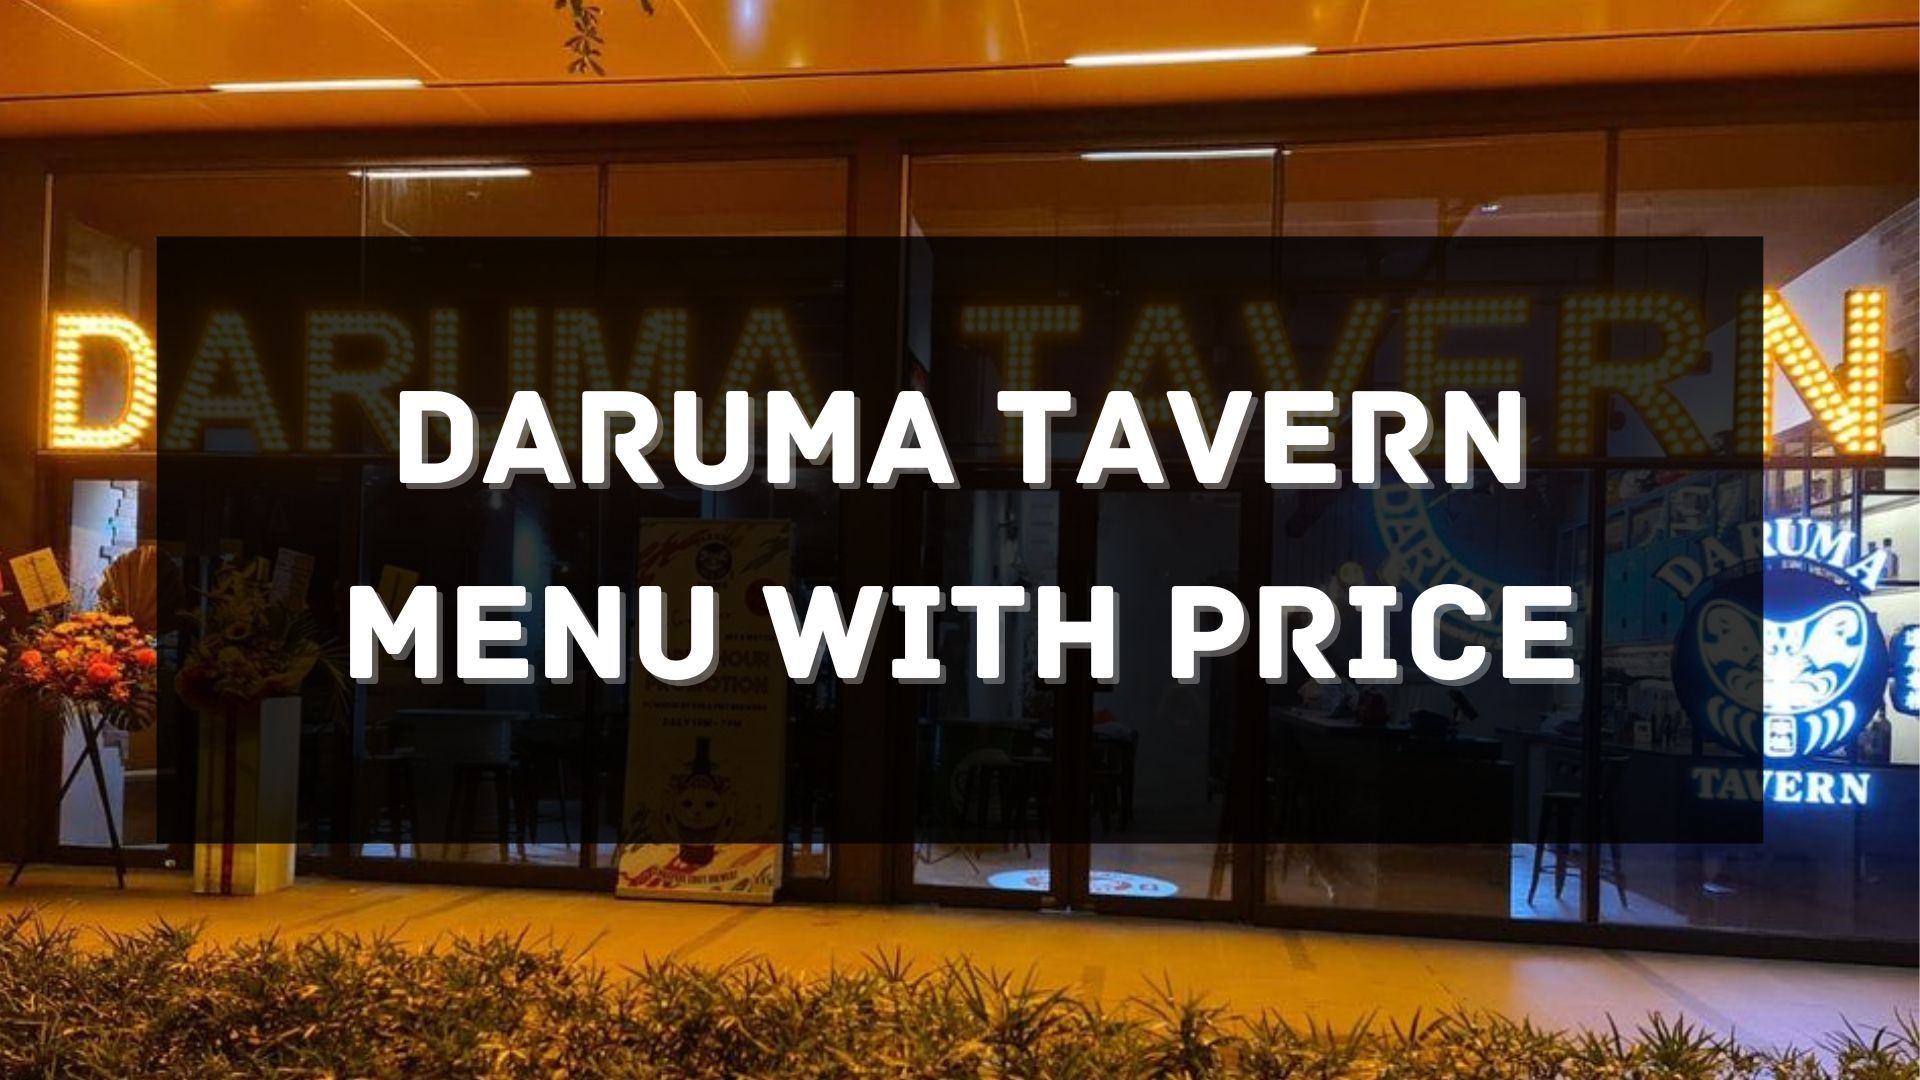 daruma tavern menu with price singapore